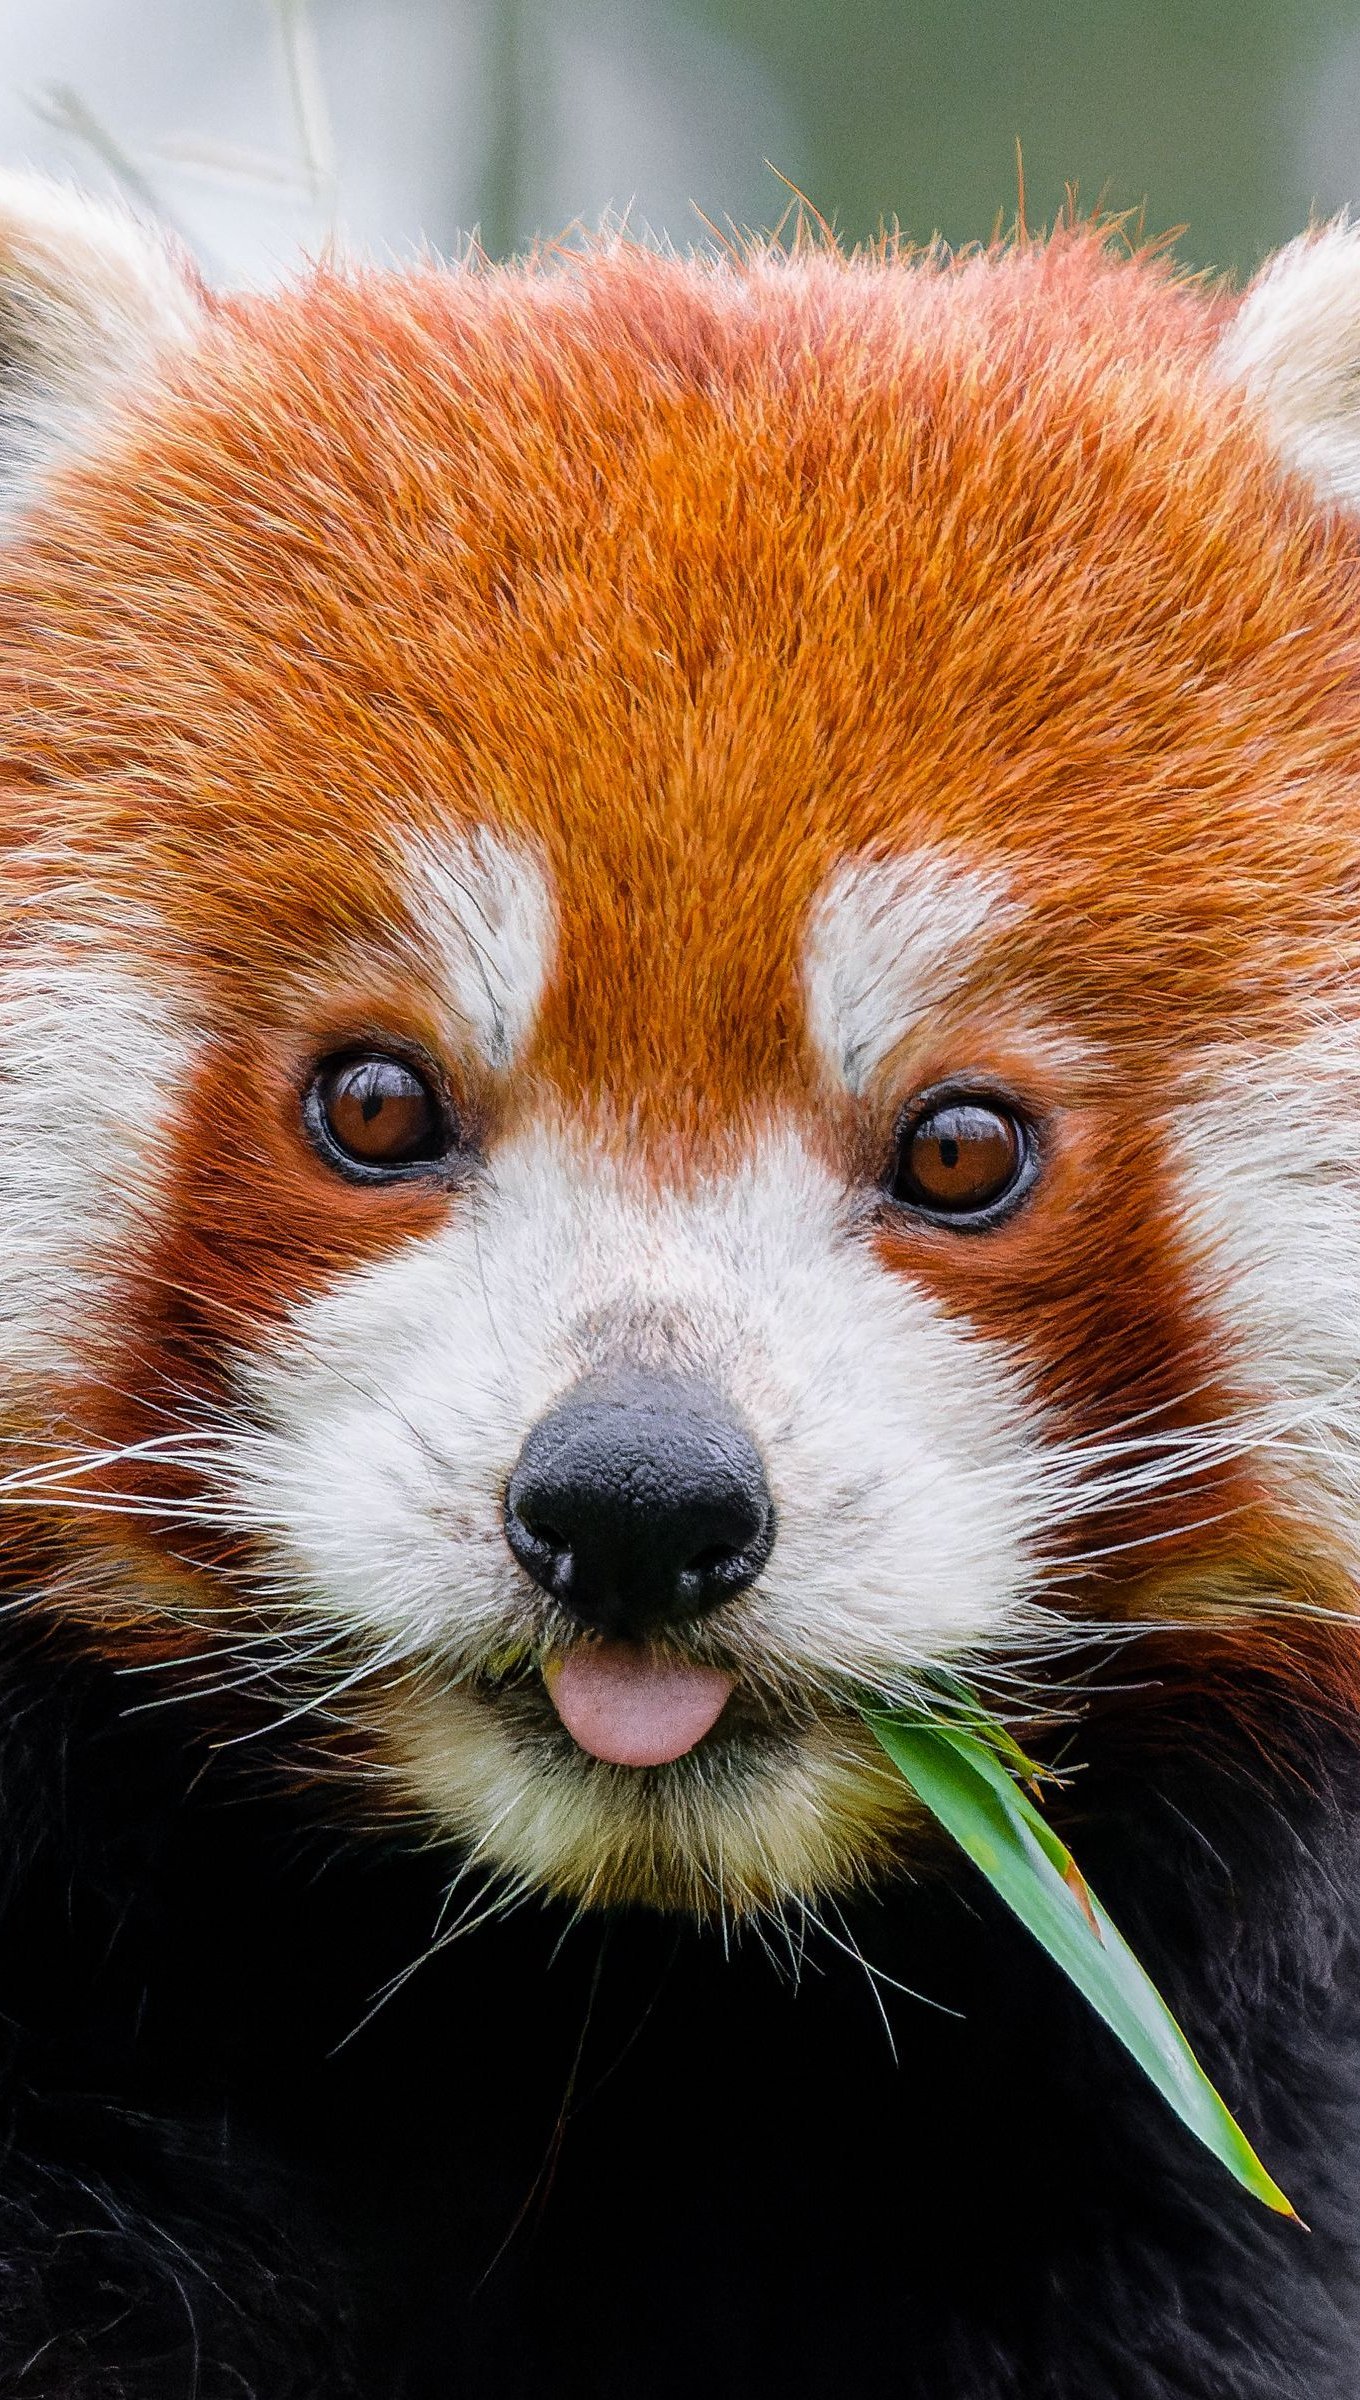 Fondos de pantalla Panda rojo comiendo Vertical